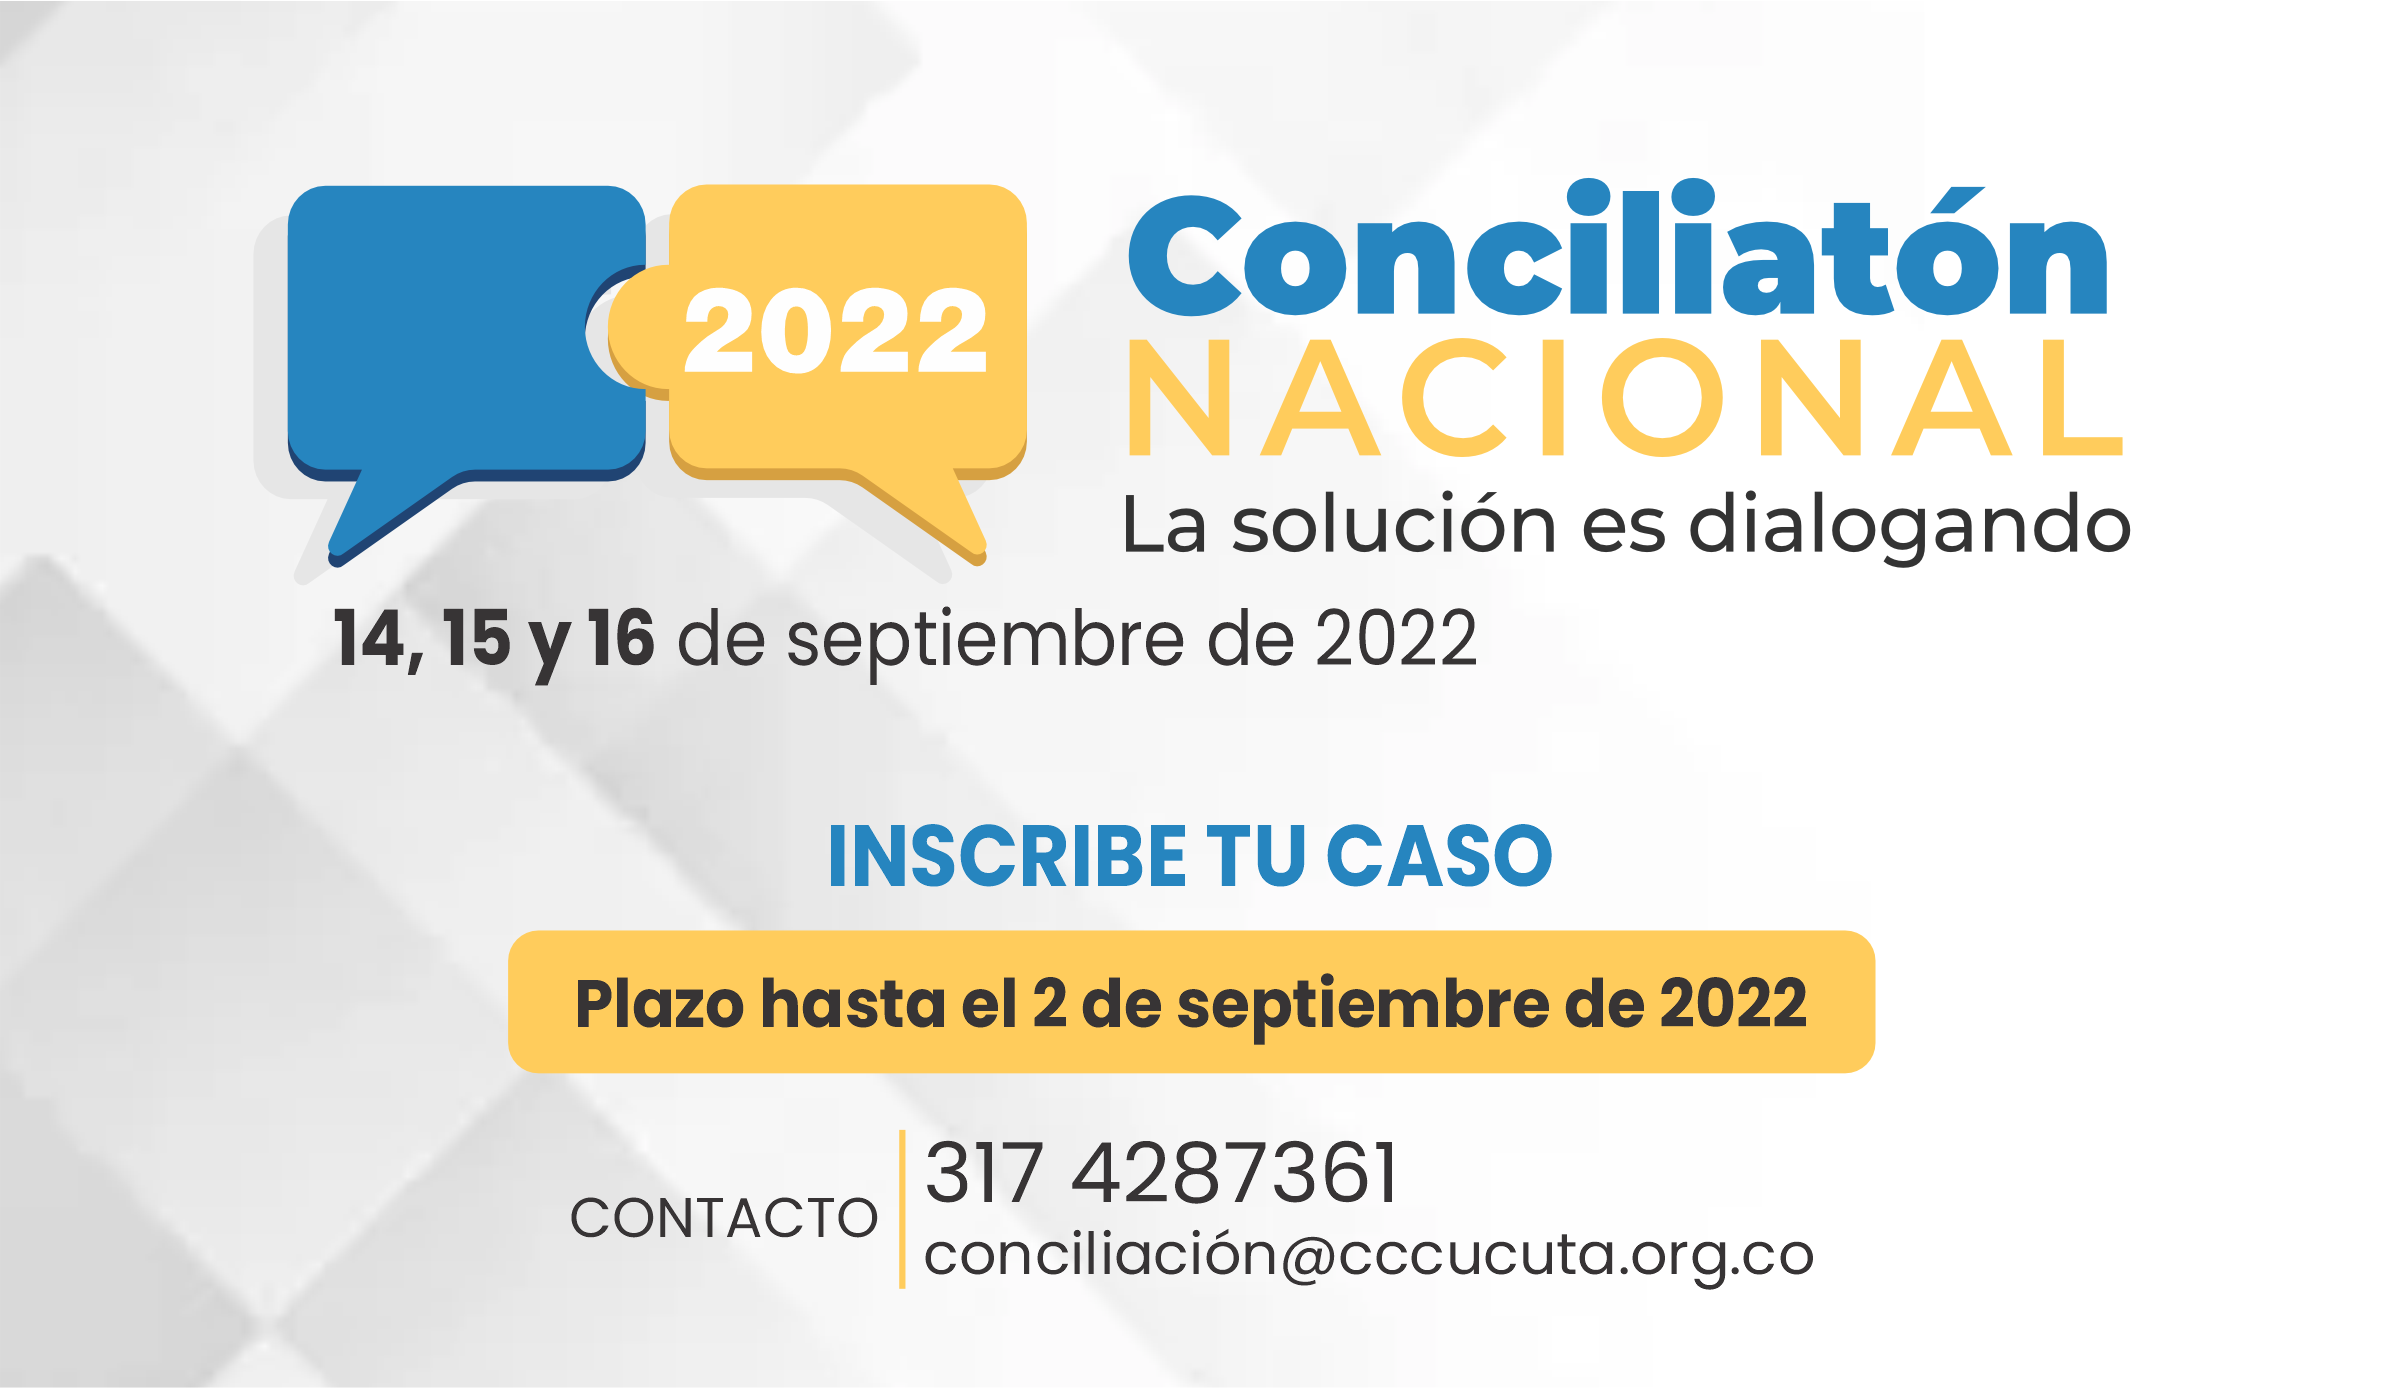 Conciliatn 2022